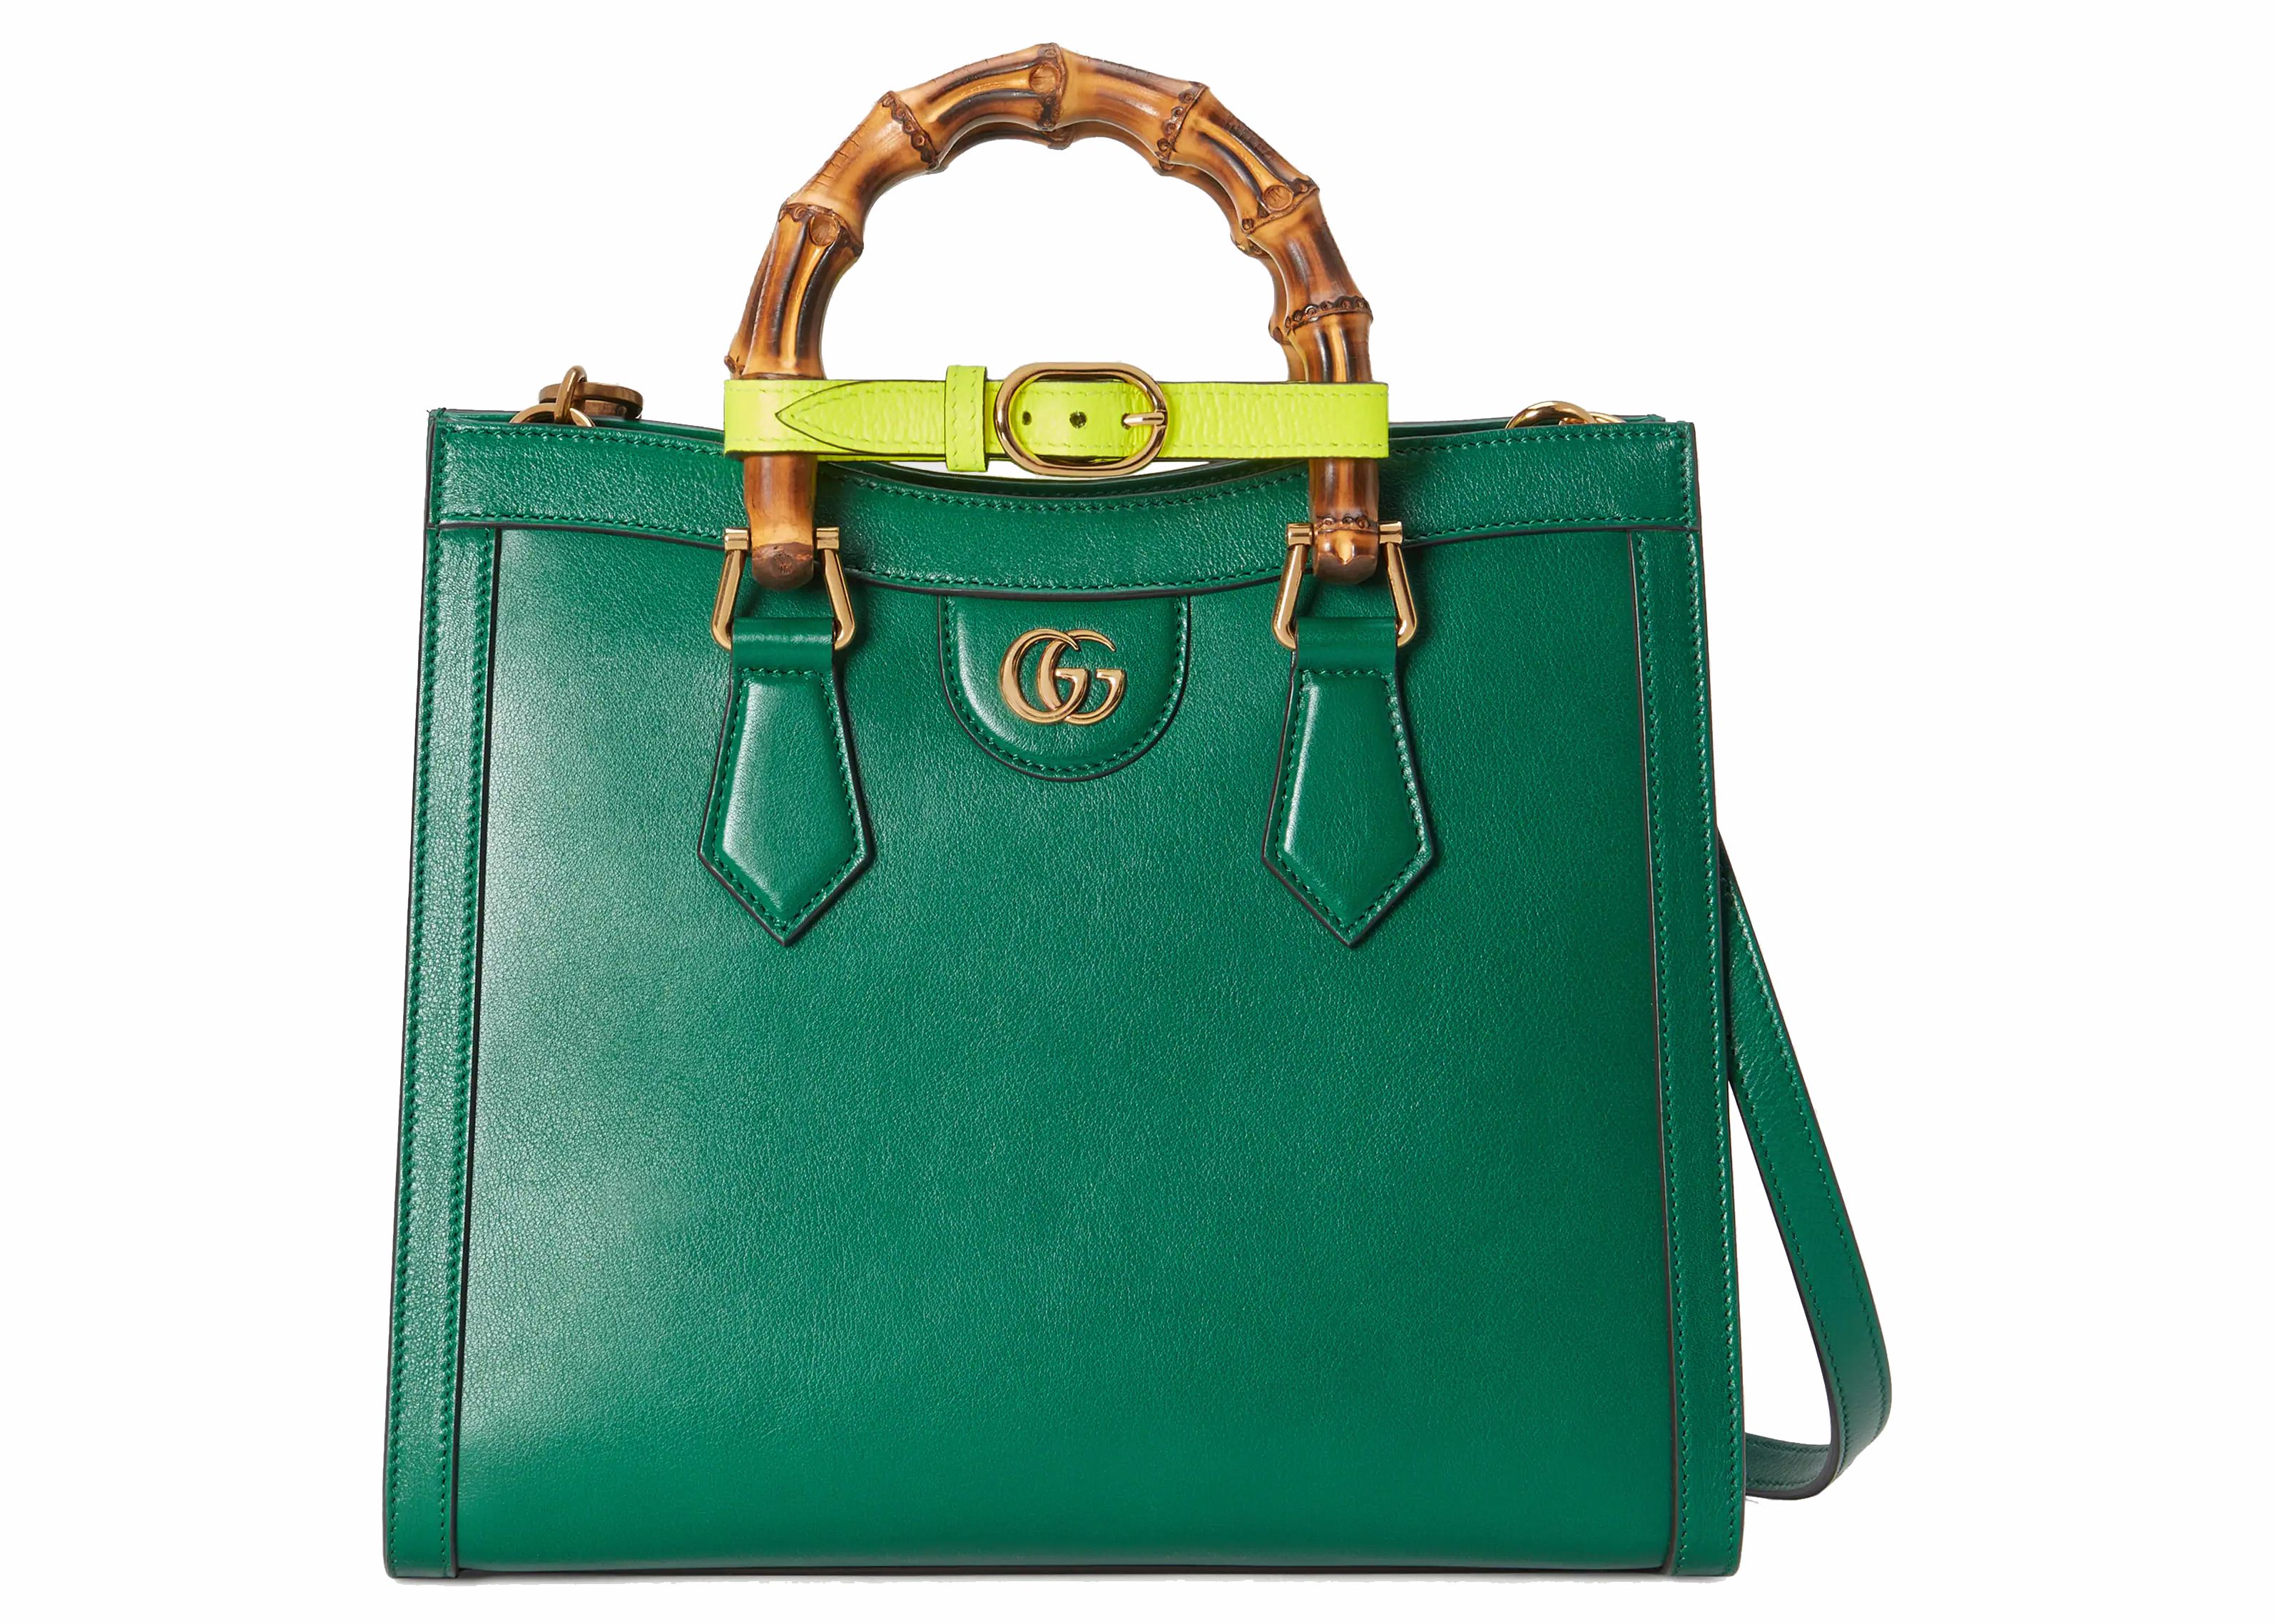 Gucci Diana Small Tote Bag Emerald Green | StockX